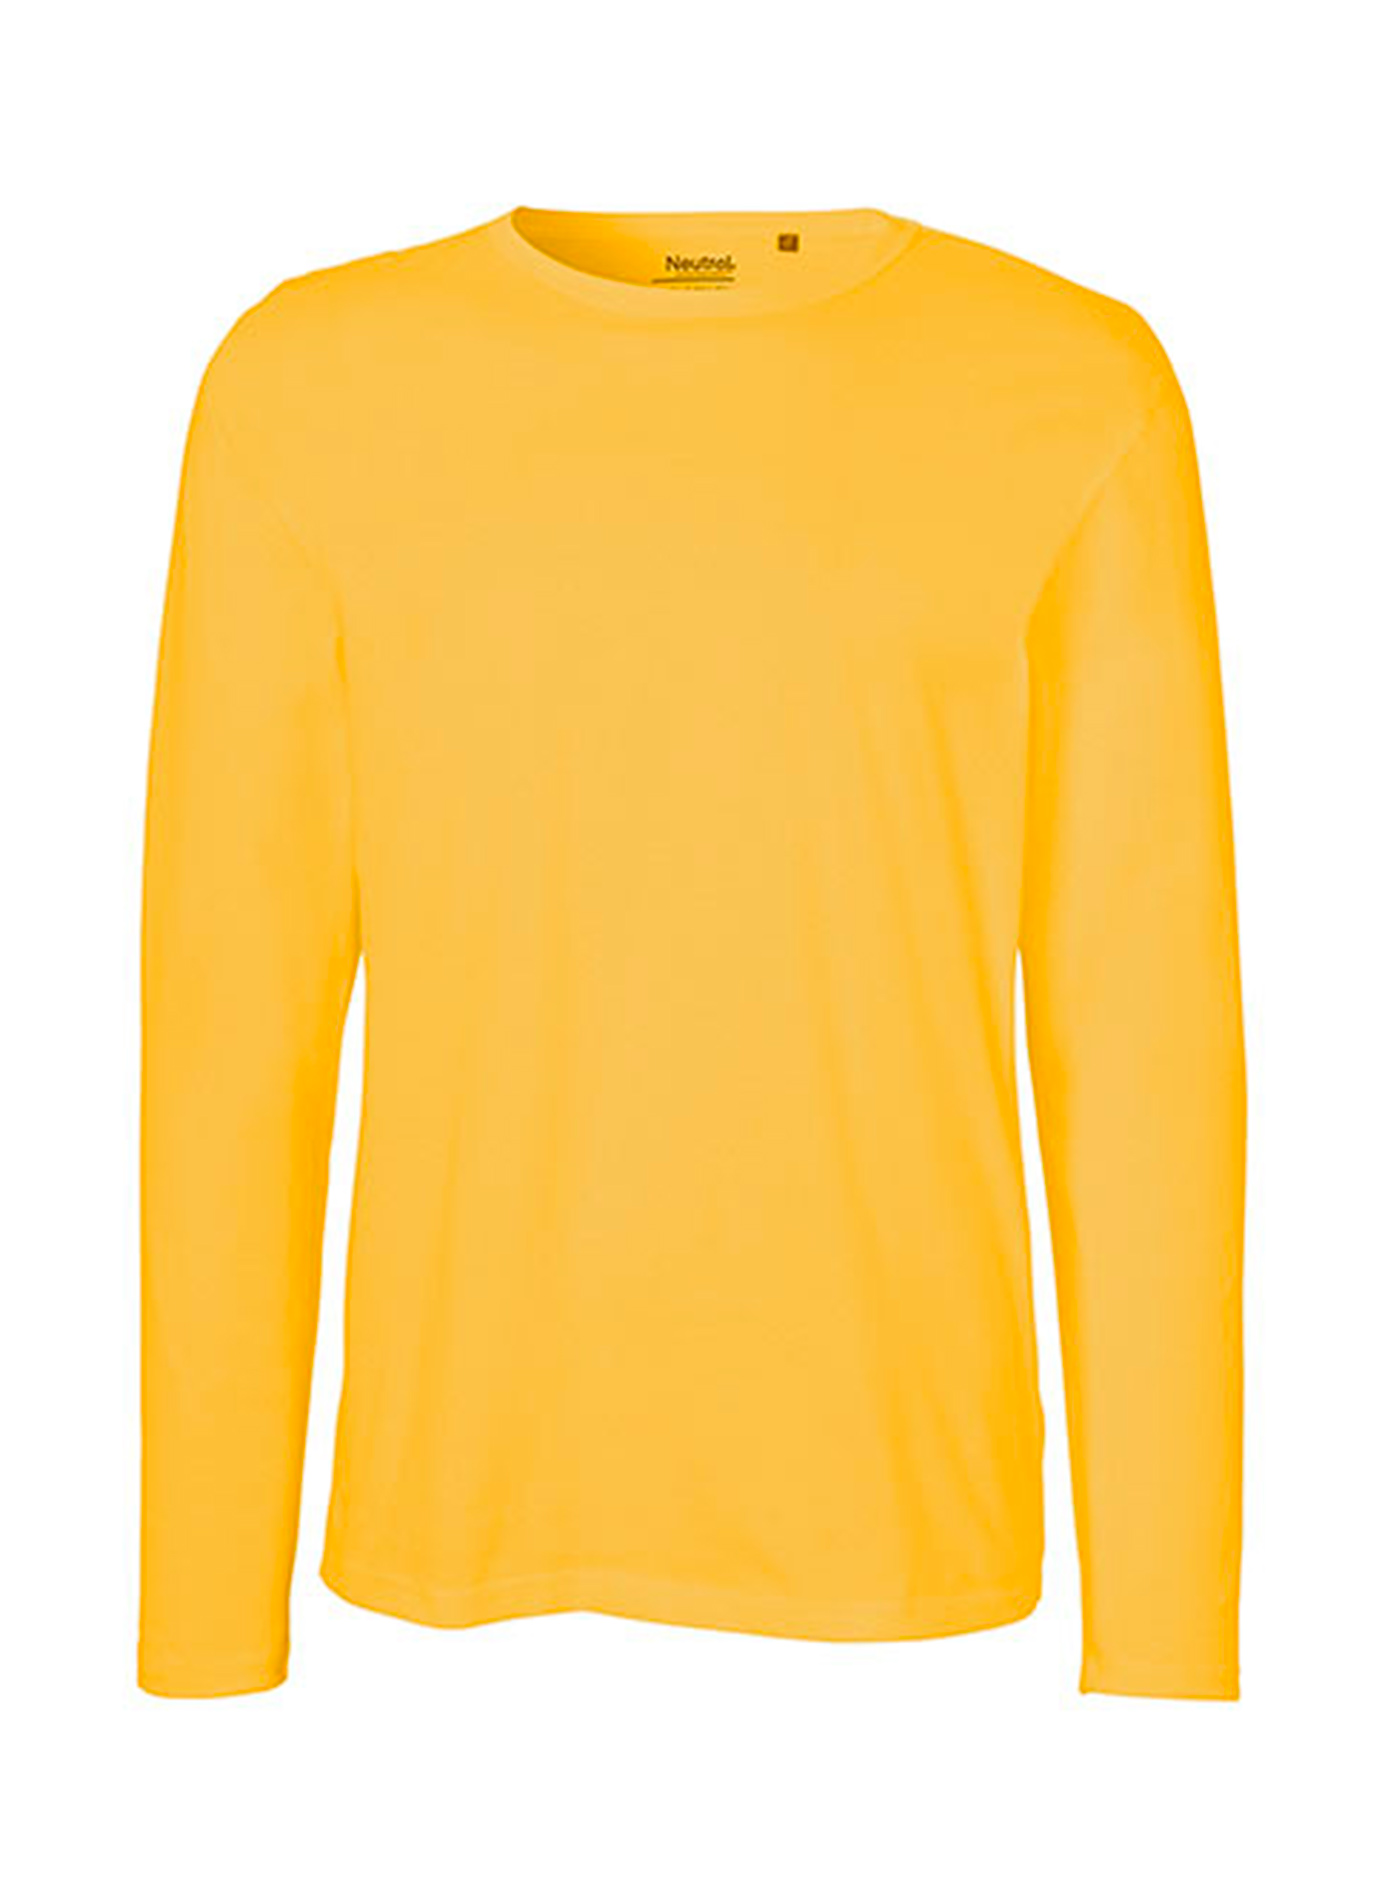 Pánské tričko s dlouhým rukávem Neutral - Žlutá XL